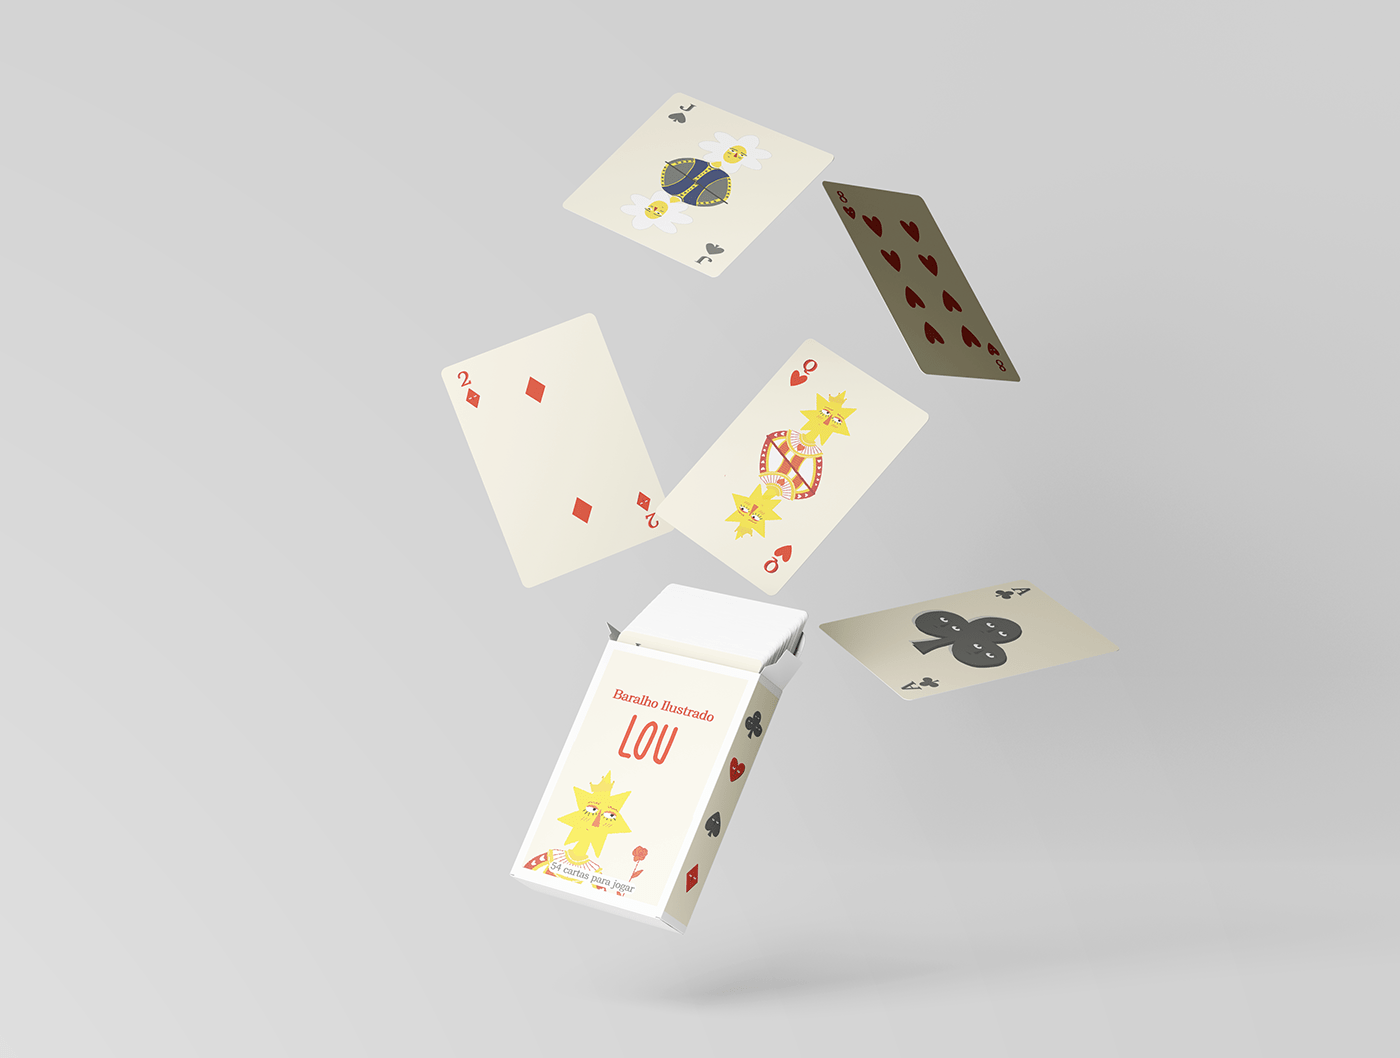 Baralho Baralho de Cartas Baralho Ilustrado design deck of cards Playing Cards Cards design utfpr